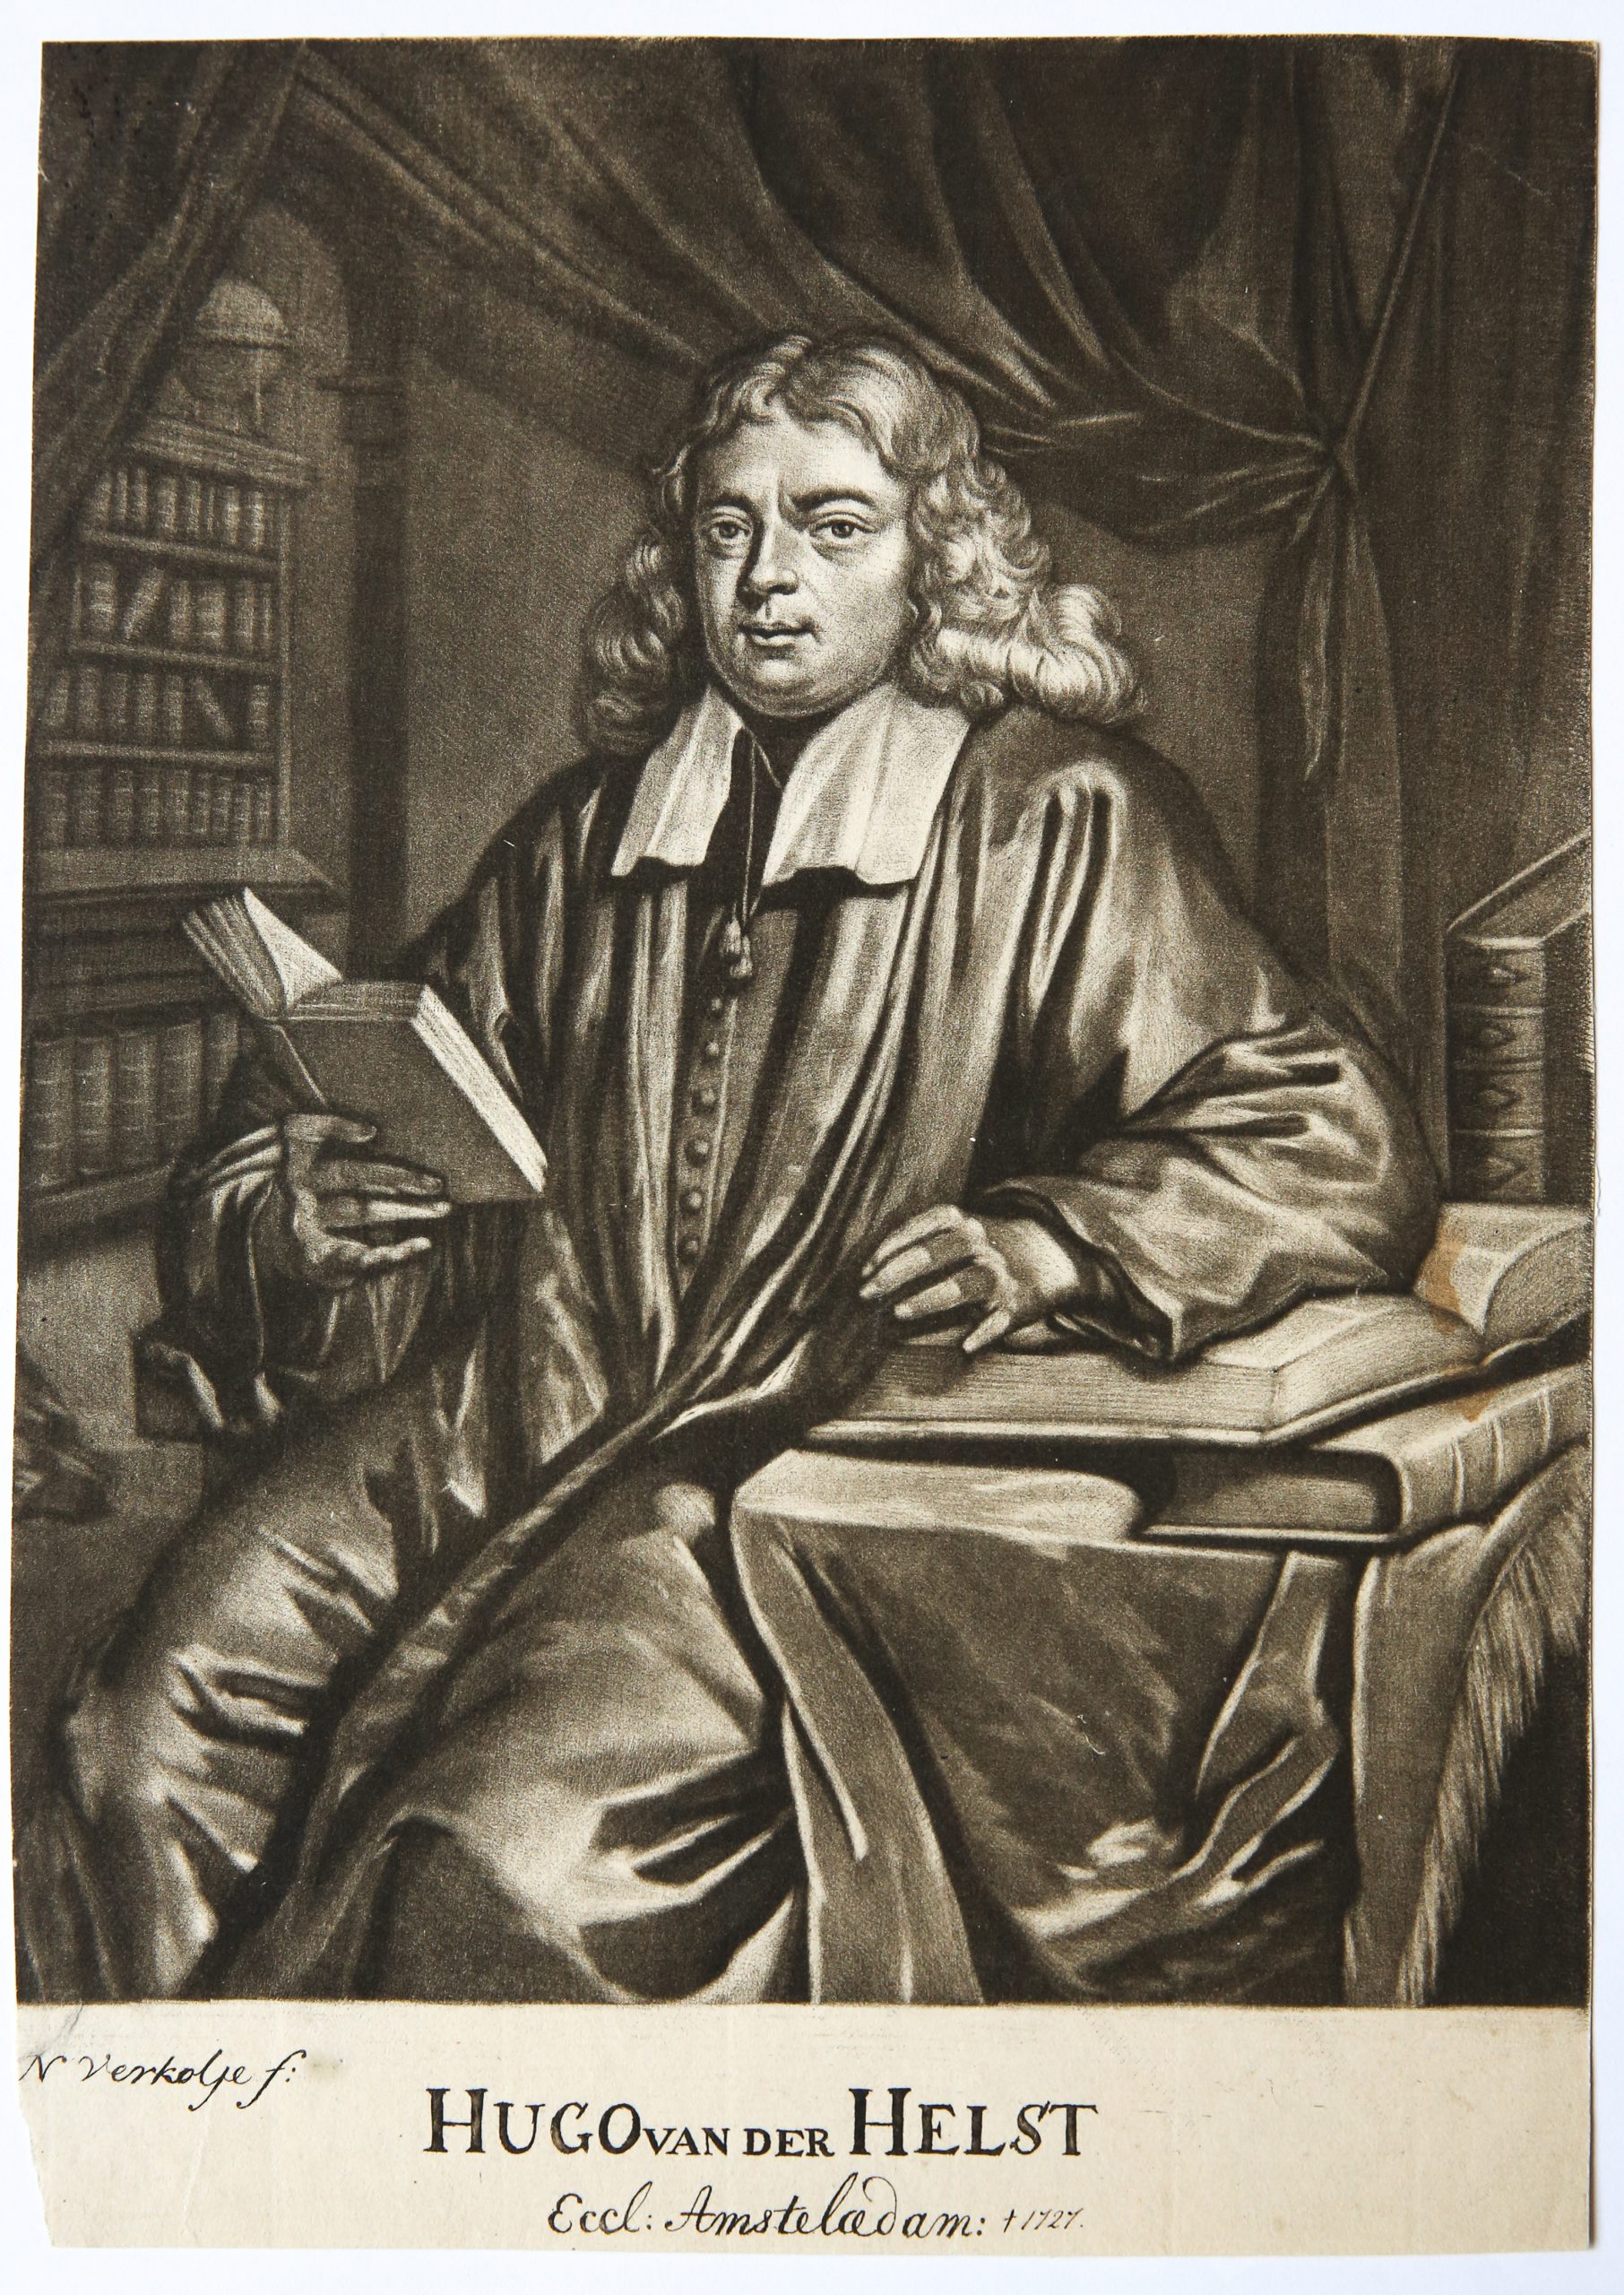 [Mezzotint] Portrait of Hugo van der Helst/Portret van predikant Hugo van der Helst.